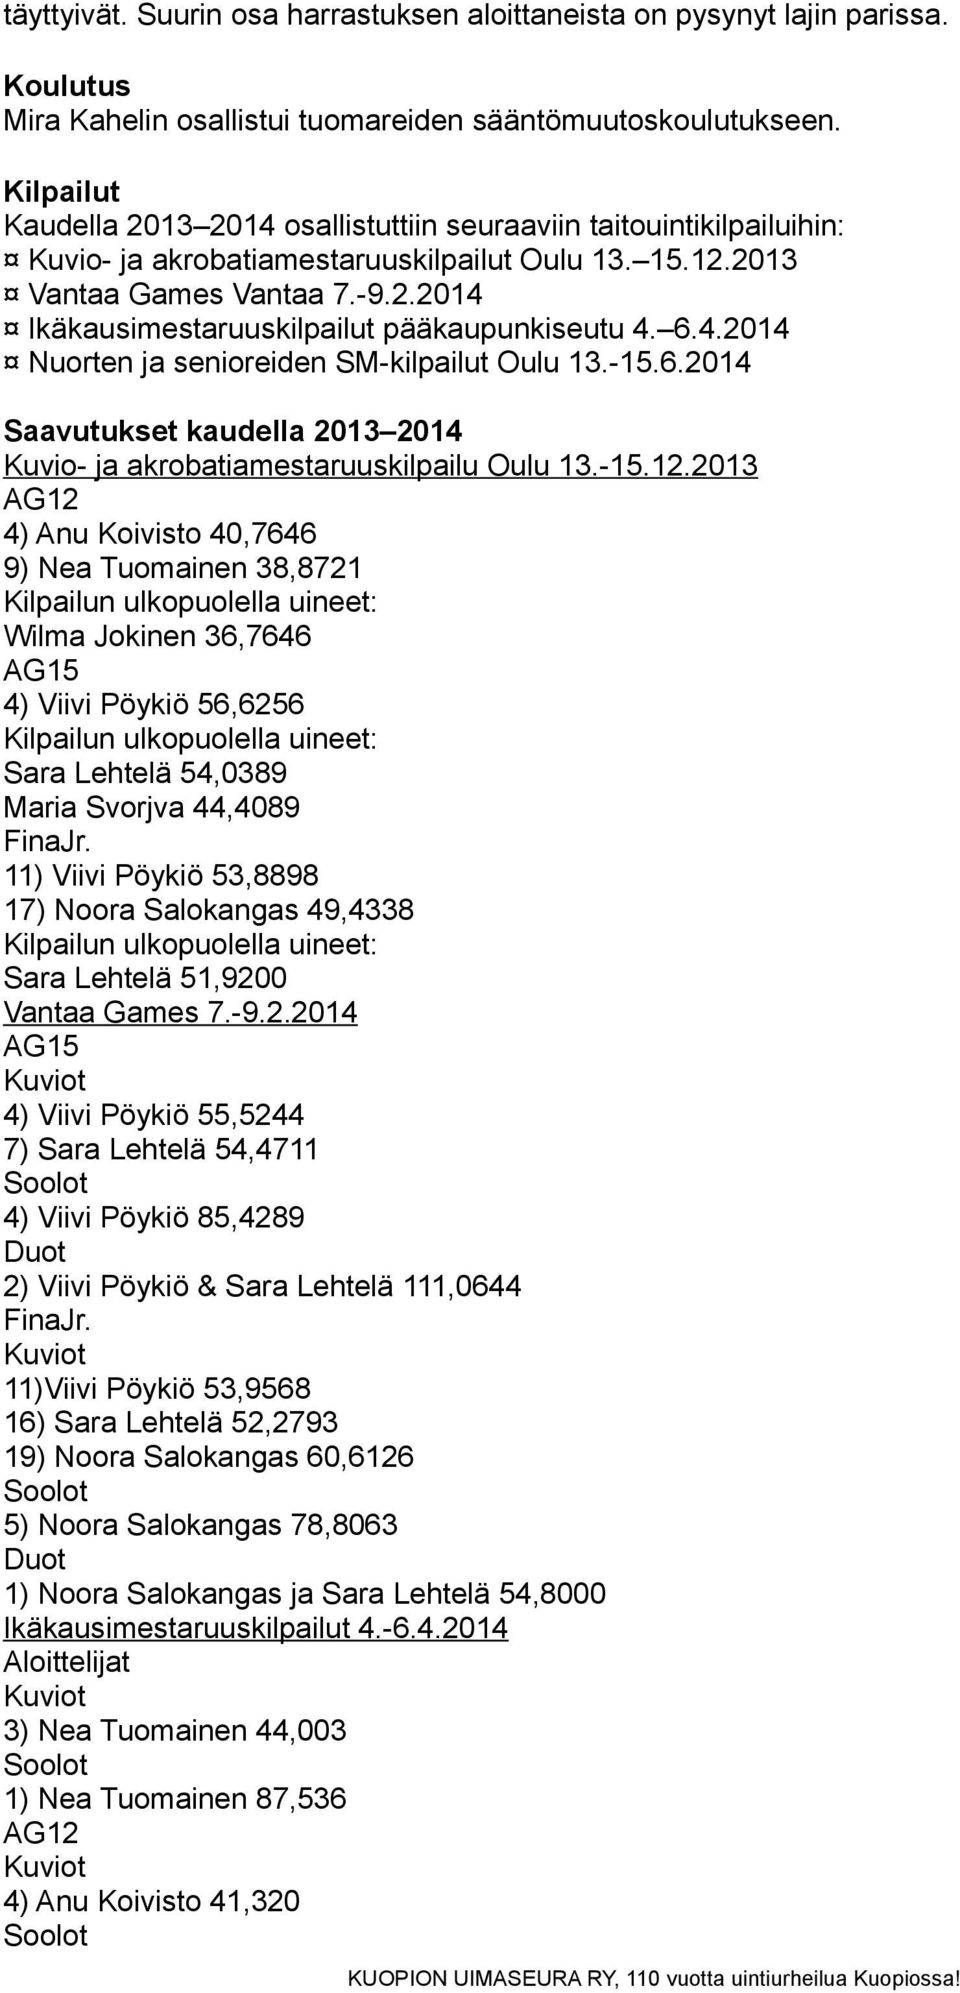 6.4.2014 Nuorten ja senioreiden SM-kilpailut Oulu 13.-15.6.2014 Saavutukset kaudella 2013 2014 Kuvio- ja akrobatiamestaruuskilpailu Oulu 13.-15.12.